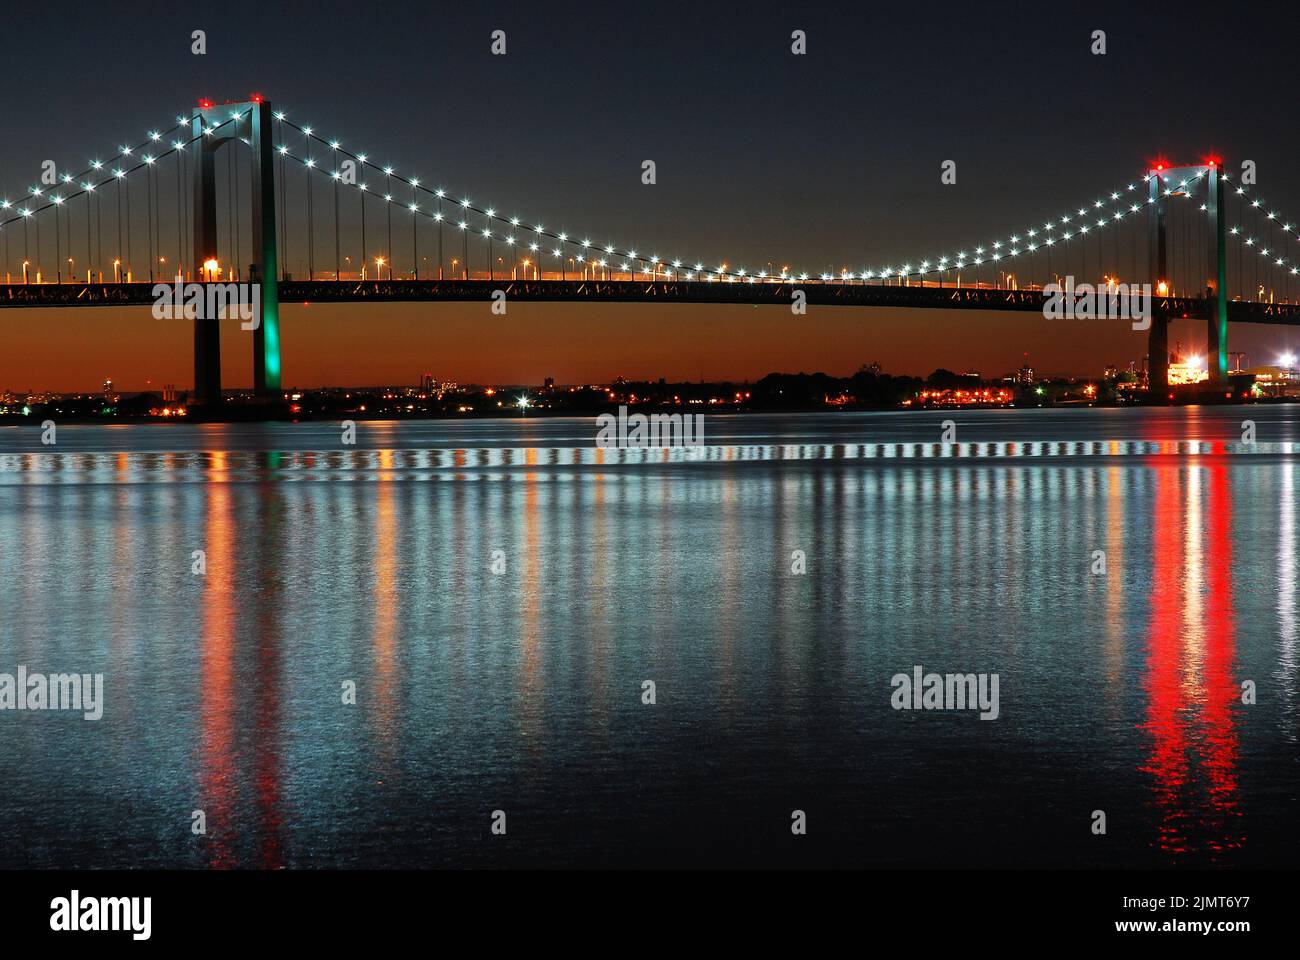 Die Lichter der Throgs Neck Bridge, die die Bronx und Queens in New York City verbindet, spiegeln sich im ruhigen und stillen Wasser wider Stockfoto